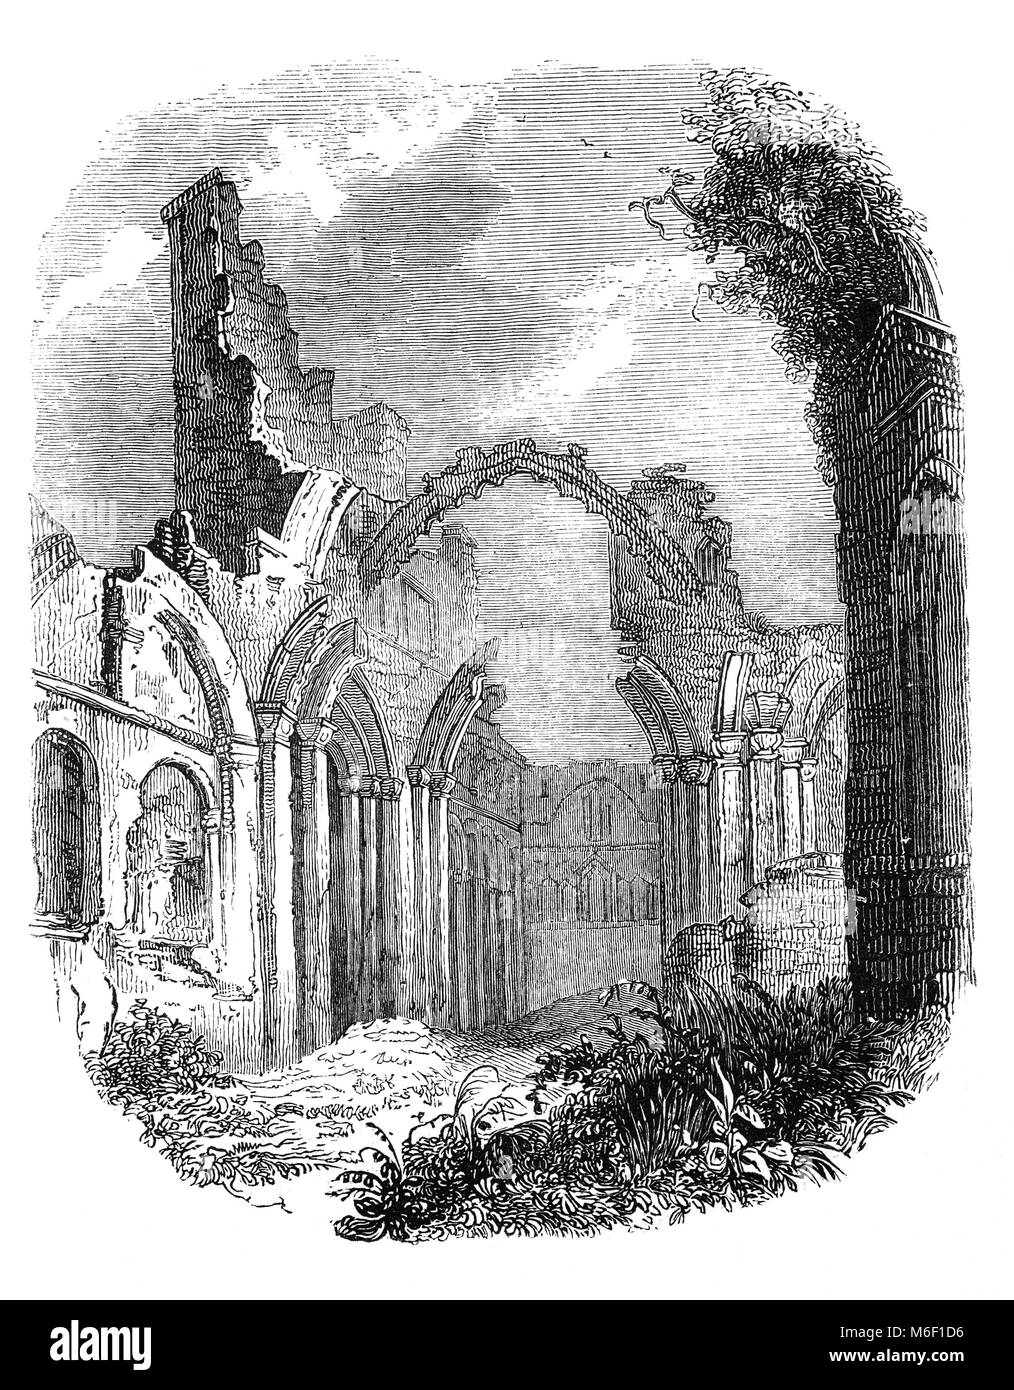 Les ruines du monastère de Lindisfarne a été fondée par un moine Irlandais Saint Aidan, qui avaient été envoyés à partir d'Iona au large de la côte ouest de l'Écosse à la Northumbrie à la demande du roi Oswald. Le prieuré a été fondée avant la fin de 634 et Aidan y demeure jusqu'à sa mort en 651. À la fin du xie ou début du xiie siècle, le monastère a été rétablie après la fin de raids vikings. On a commencé à travailler à l'église du prieuré autour de 1120 et s'est poursuivie jusqu'en 1150. L'île de Lindisfarne, Northumberland, England Banque D'Images